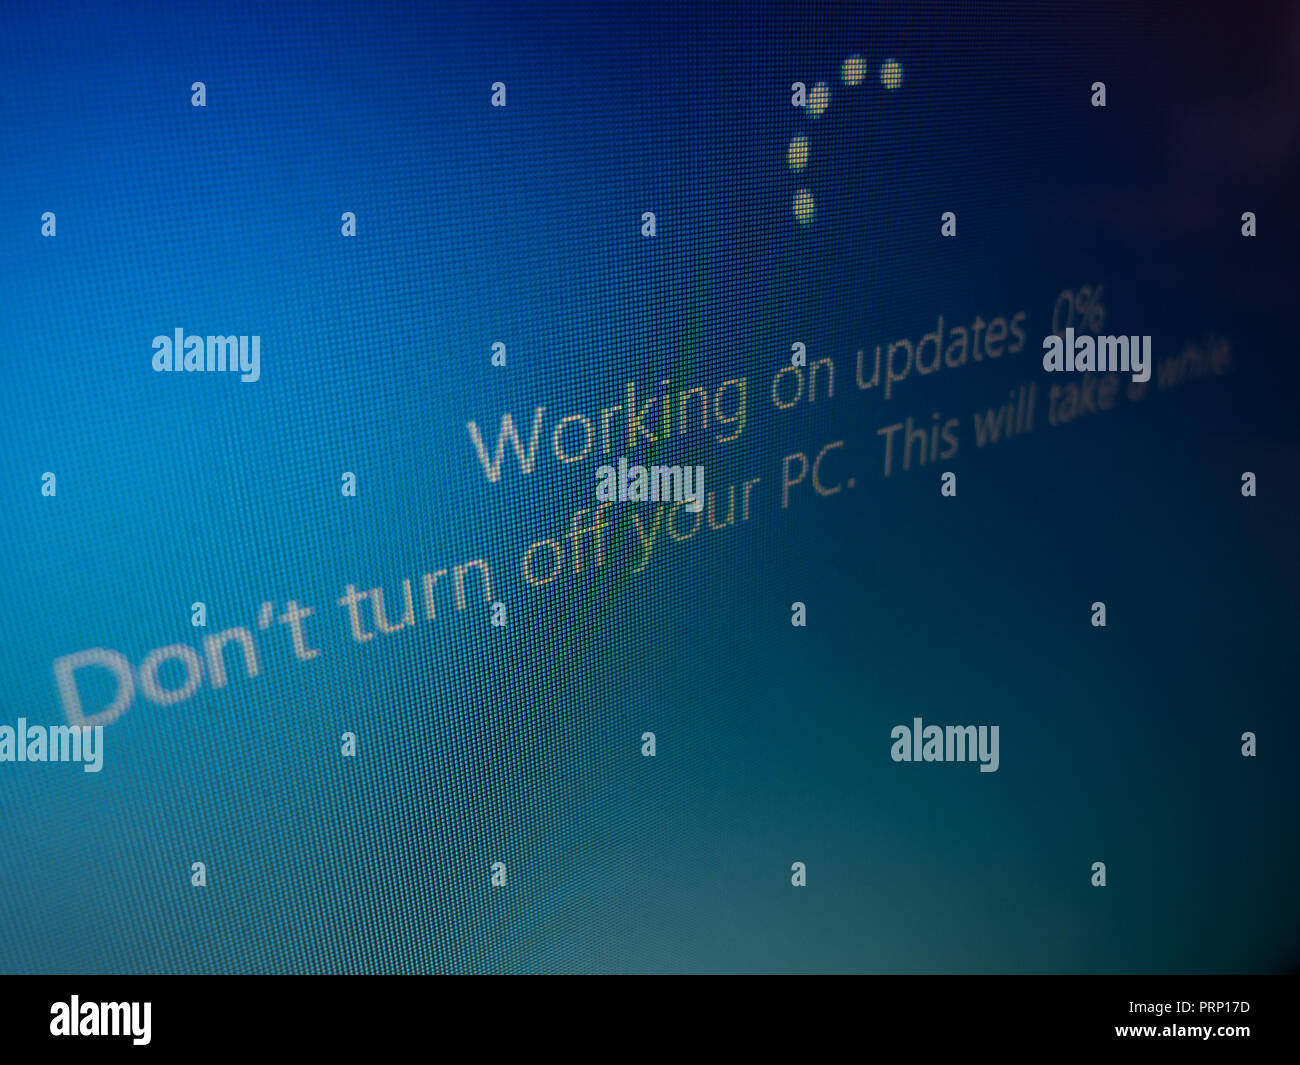 'Windows 10' Arbeiten auf Updates (Funktion Update, Version 1809), auf dem Laptop Bildschirm Gerät auf Okt, 2018 gesehen Stockfoto